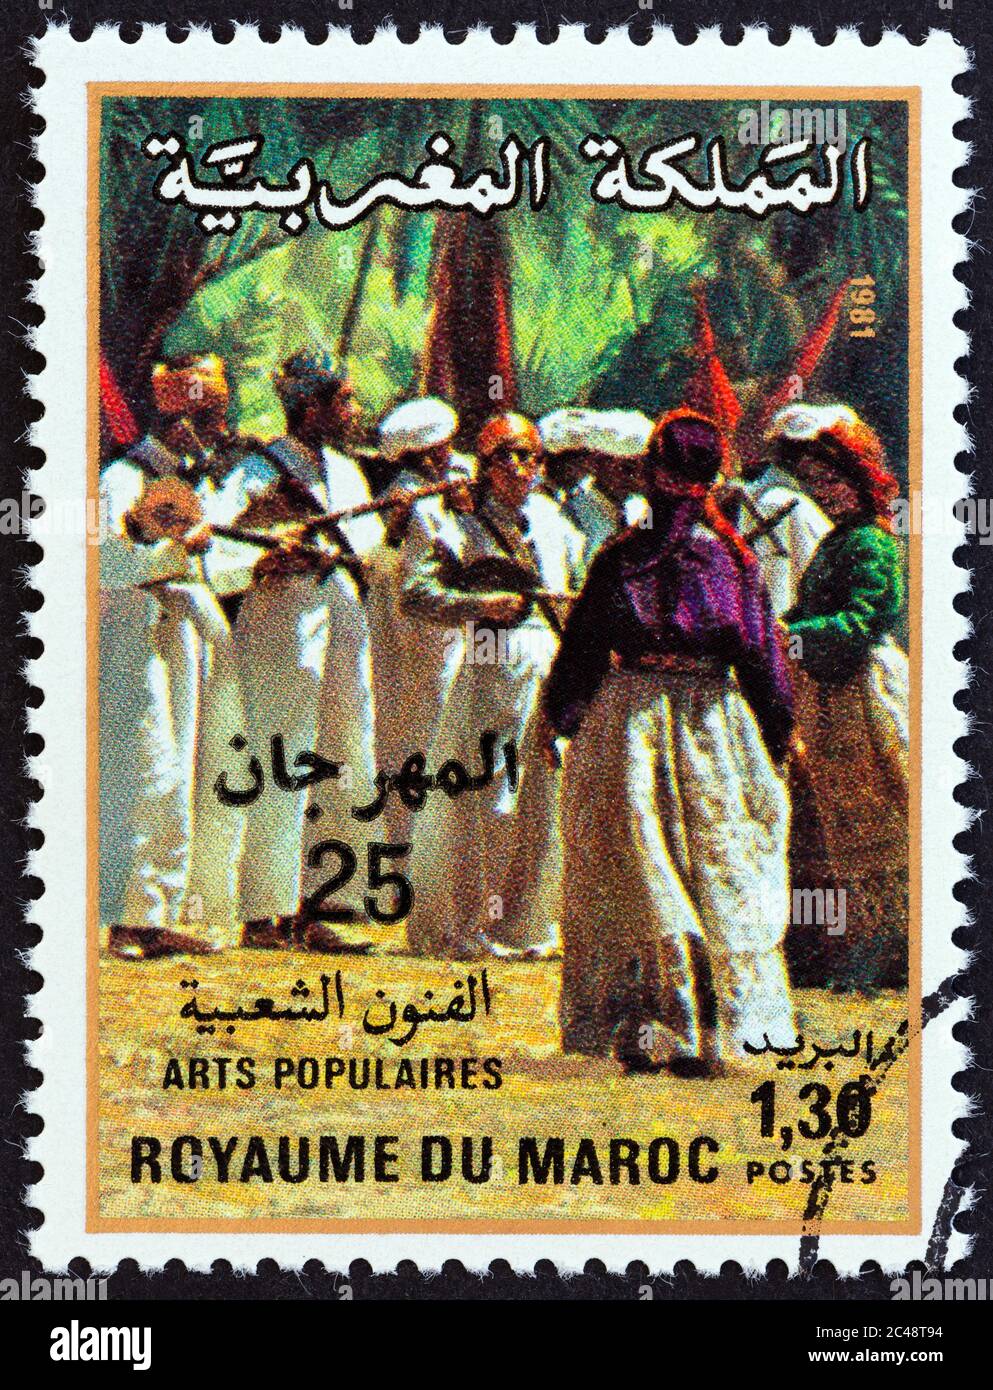 MAROKKO - UM 1981: Eine in Marokko gedruckte Briefmarke, die für das 22. Nationale Folklore-Festival in Marrakesch ausgegeben wurde, zeigt Volksmusiker, um 1981. Stockfoto